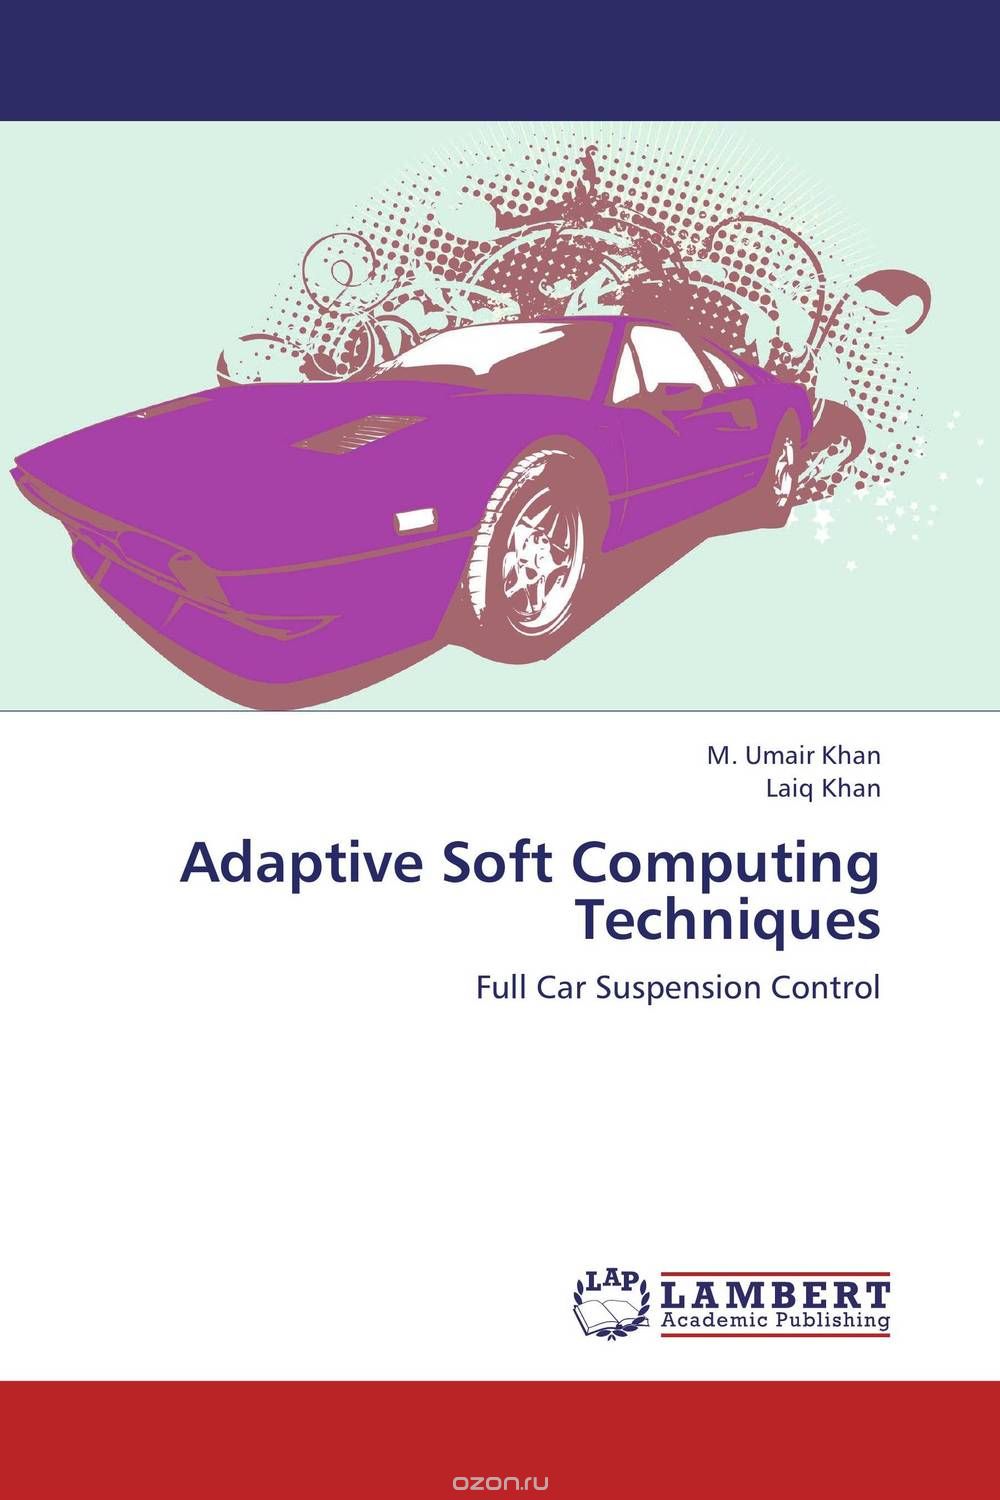 Скачать книгу "Adaptive Soft Computing Techniques"